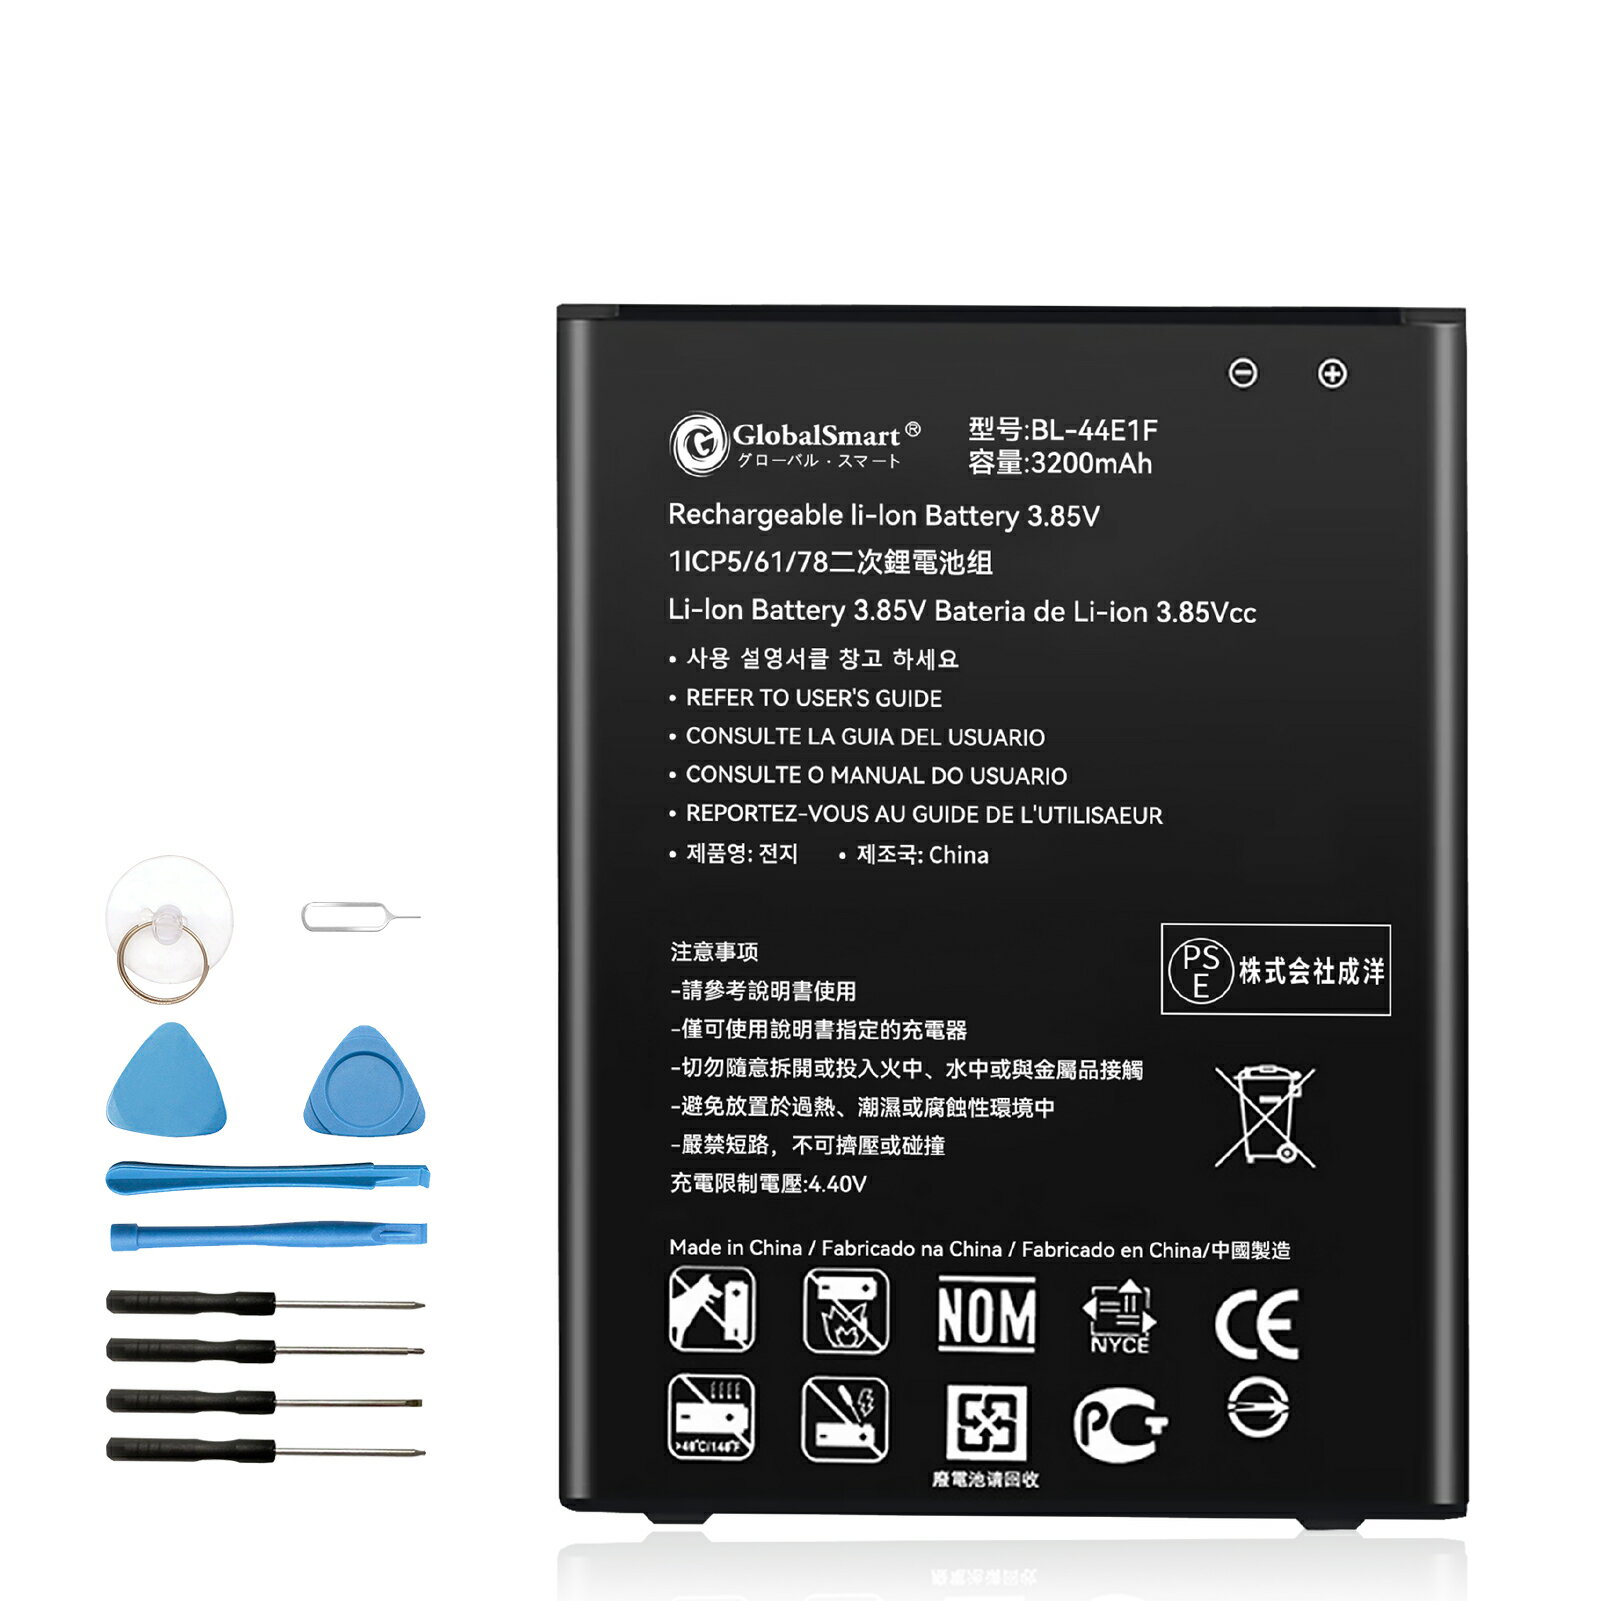 Globalsmart 新品 LG H910 7 互換 バッテリー【3200mAh 3.85V】対応用 1年保証 高品質 交換 互換高性能 電池パック XEO